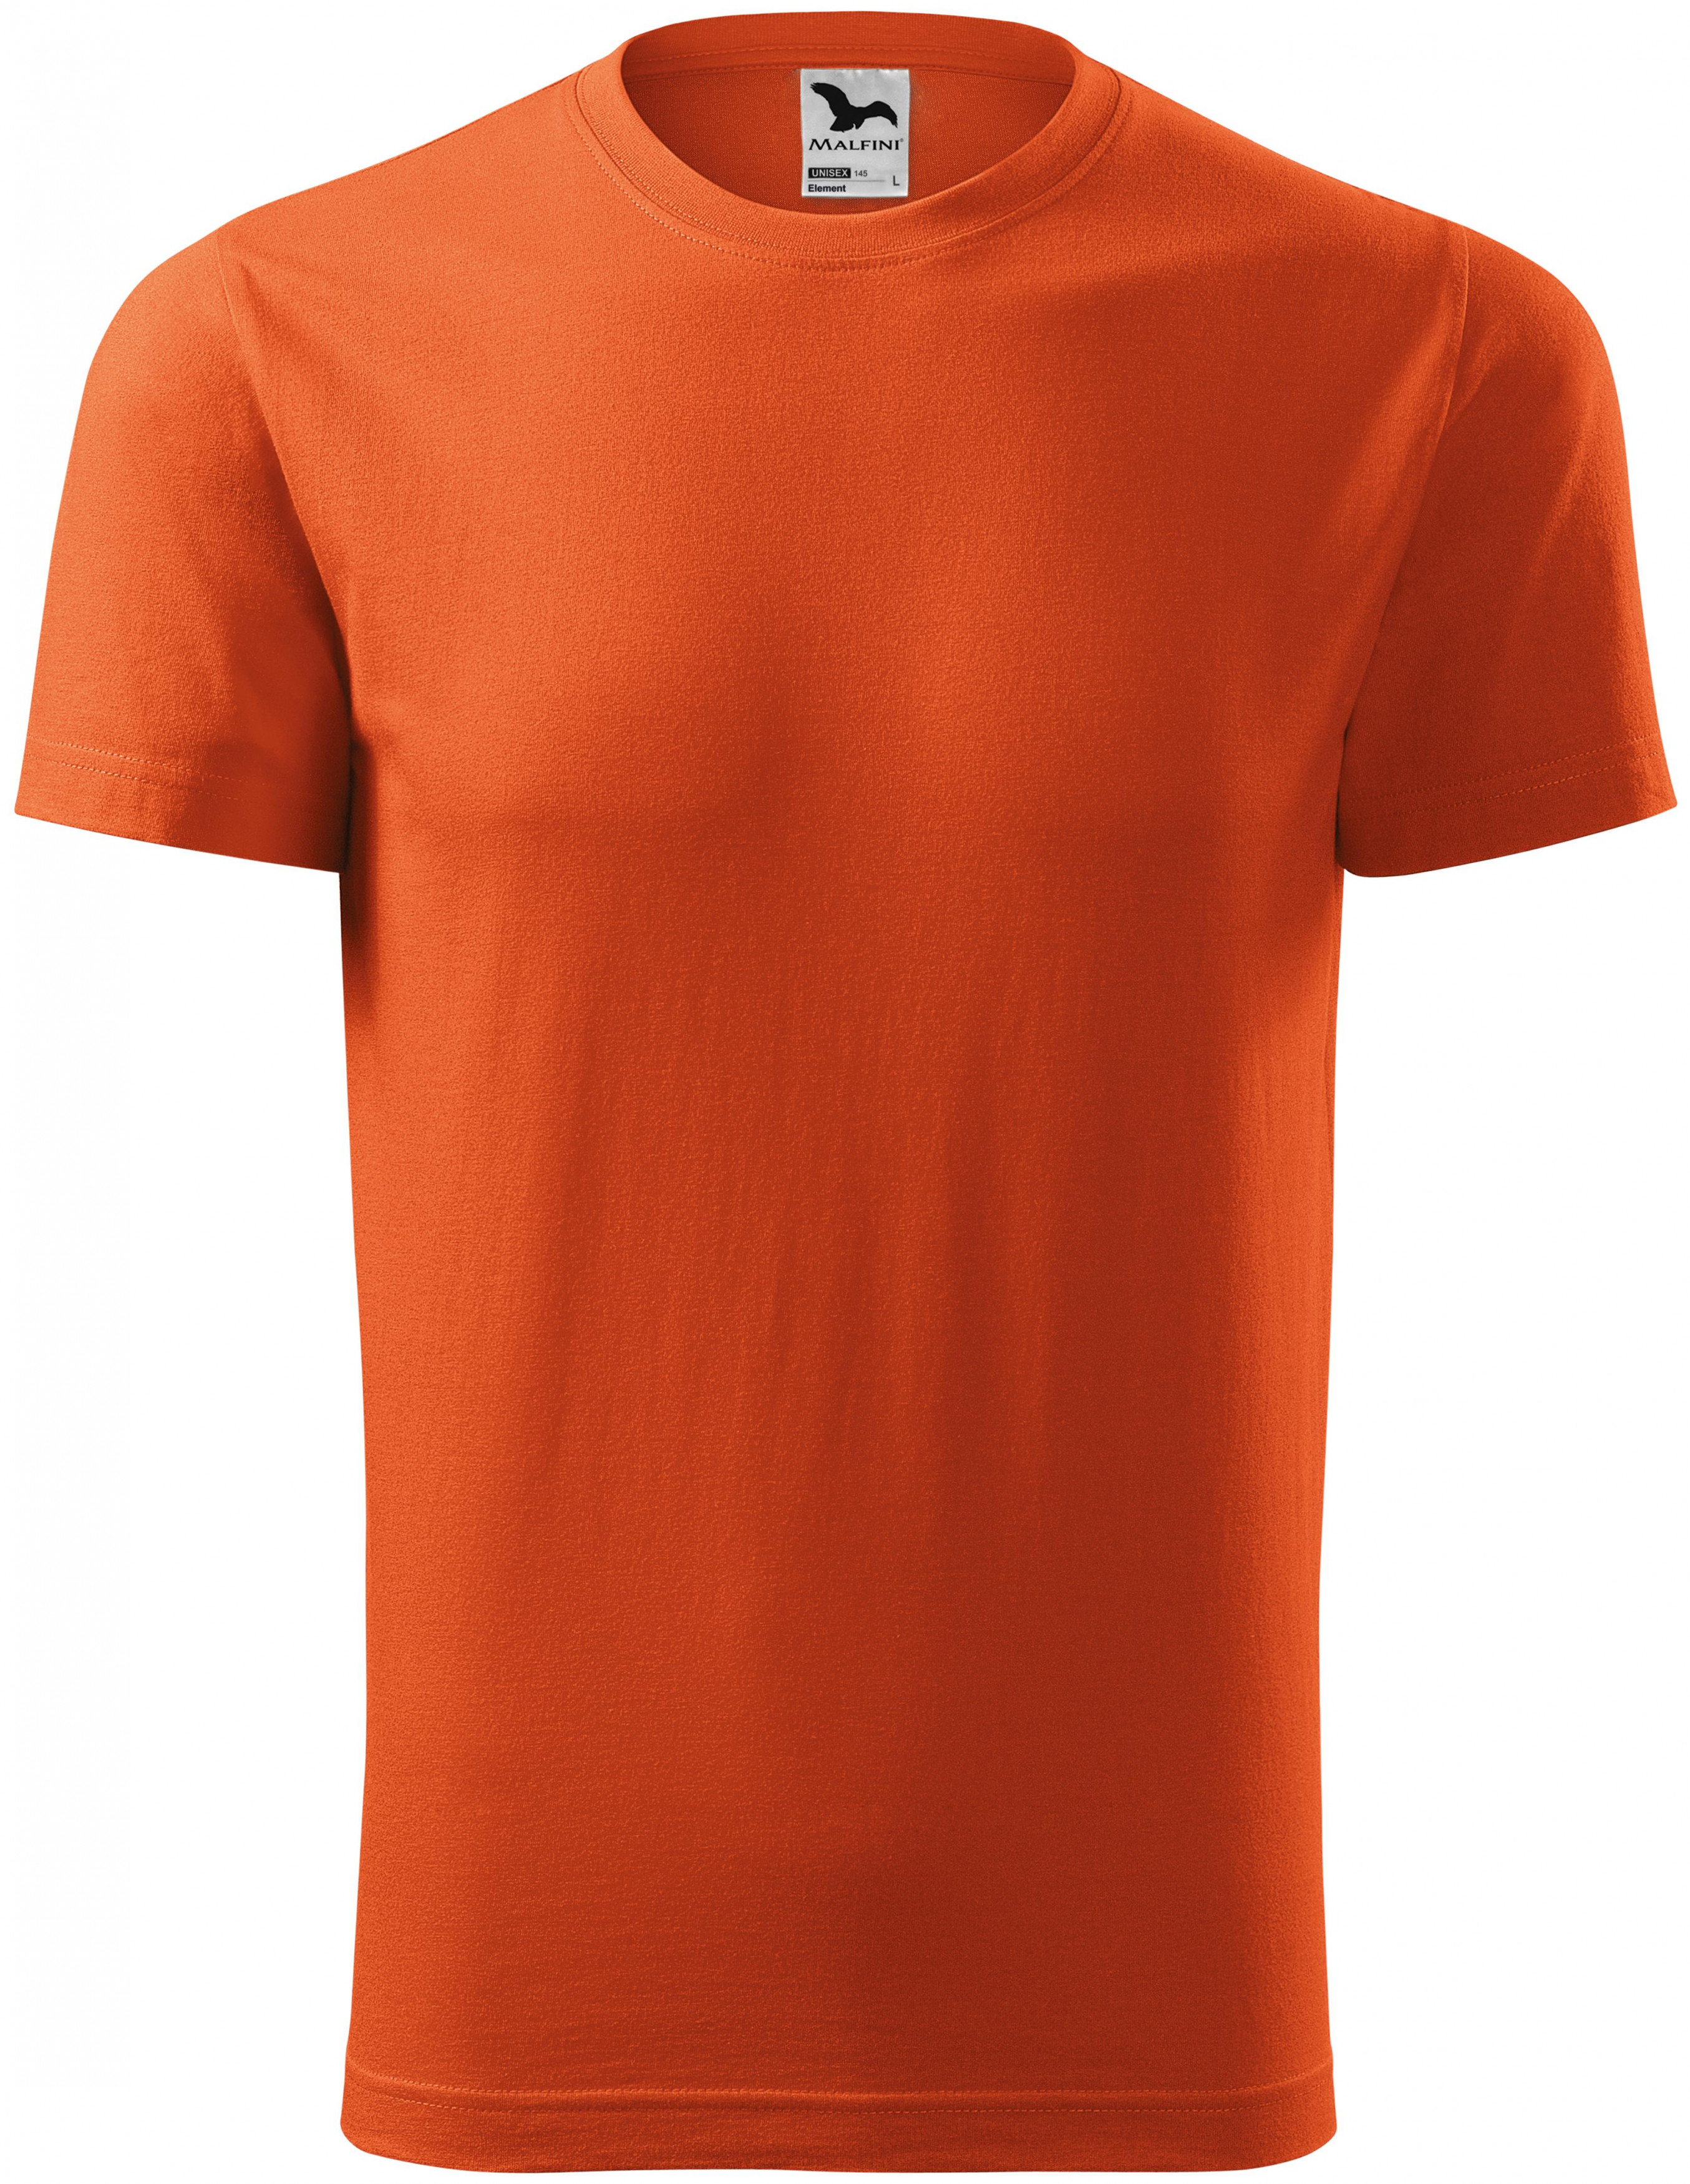 Tričko s krátkym rukávom, oranžová, 2XL